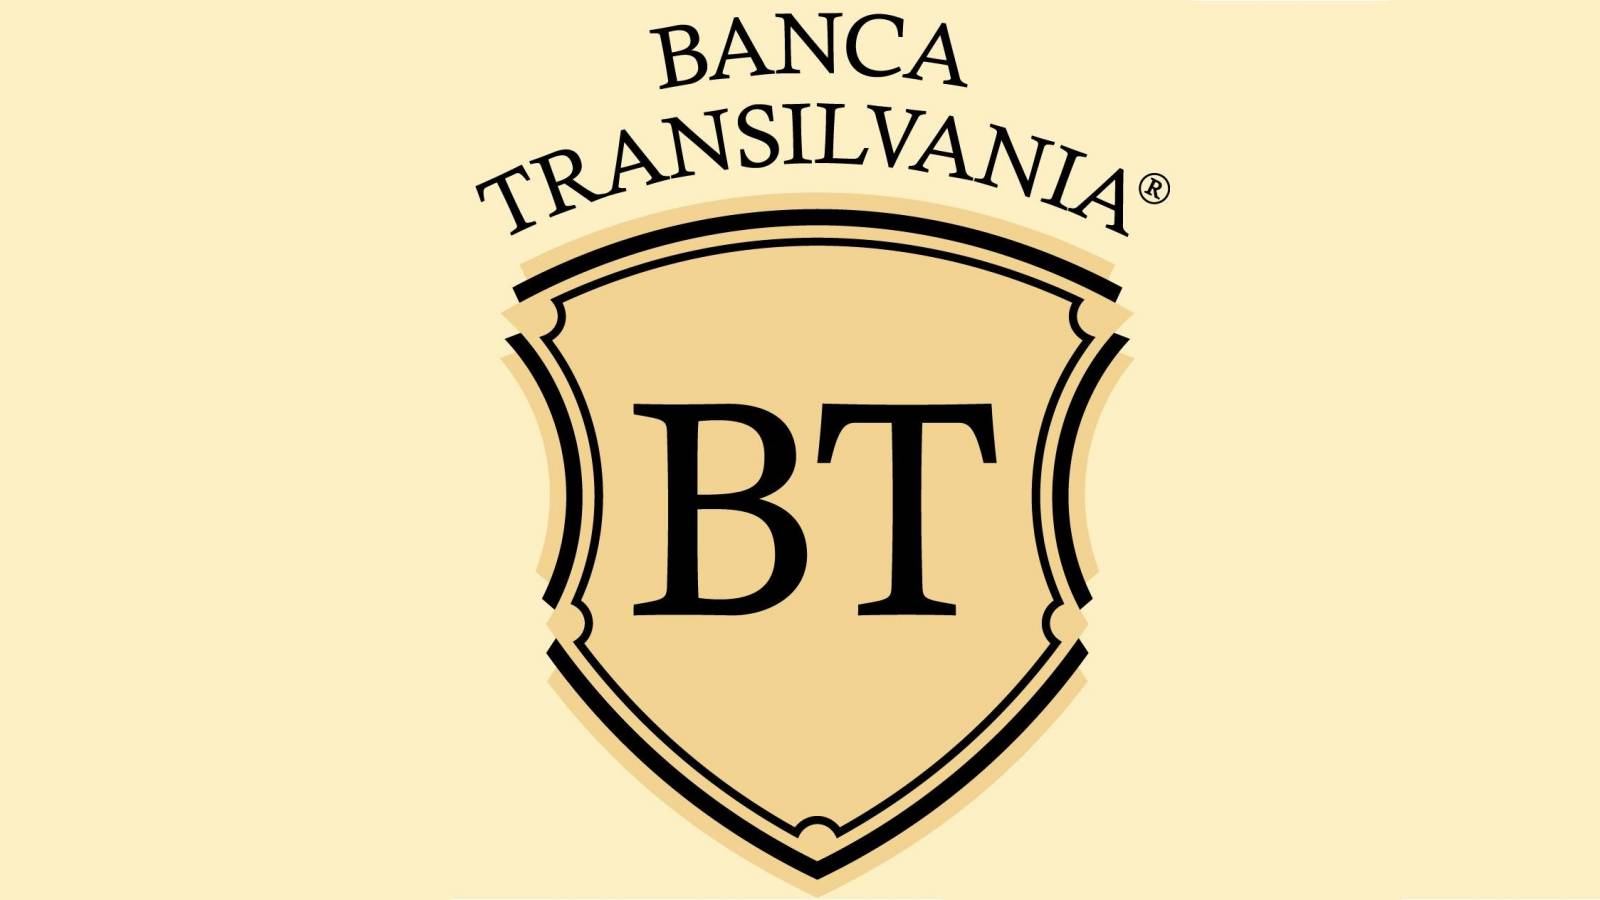 Importante medida oficial de BANCA Transilvania explicada a los clientes rumanos